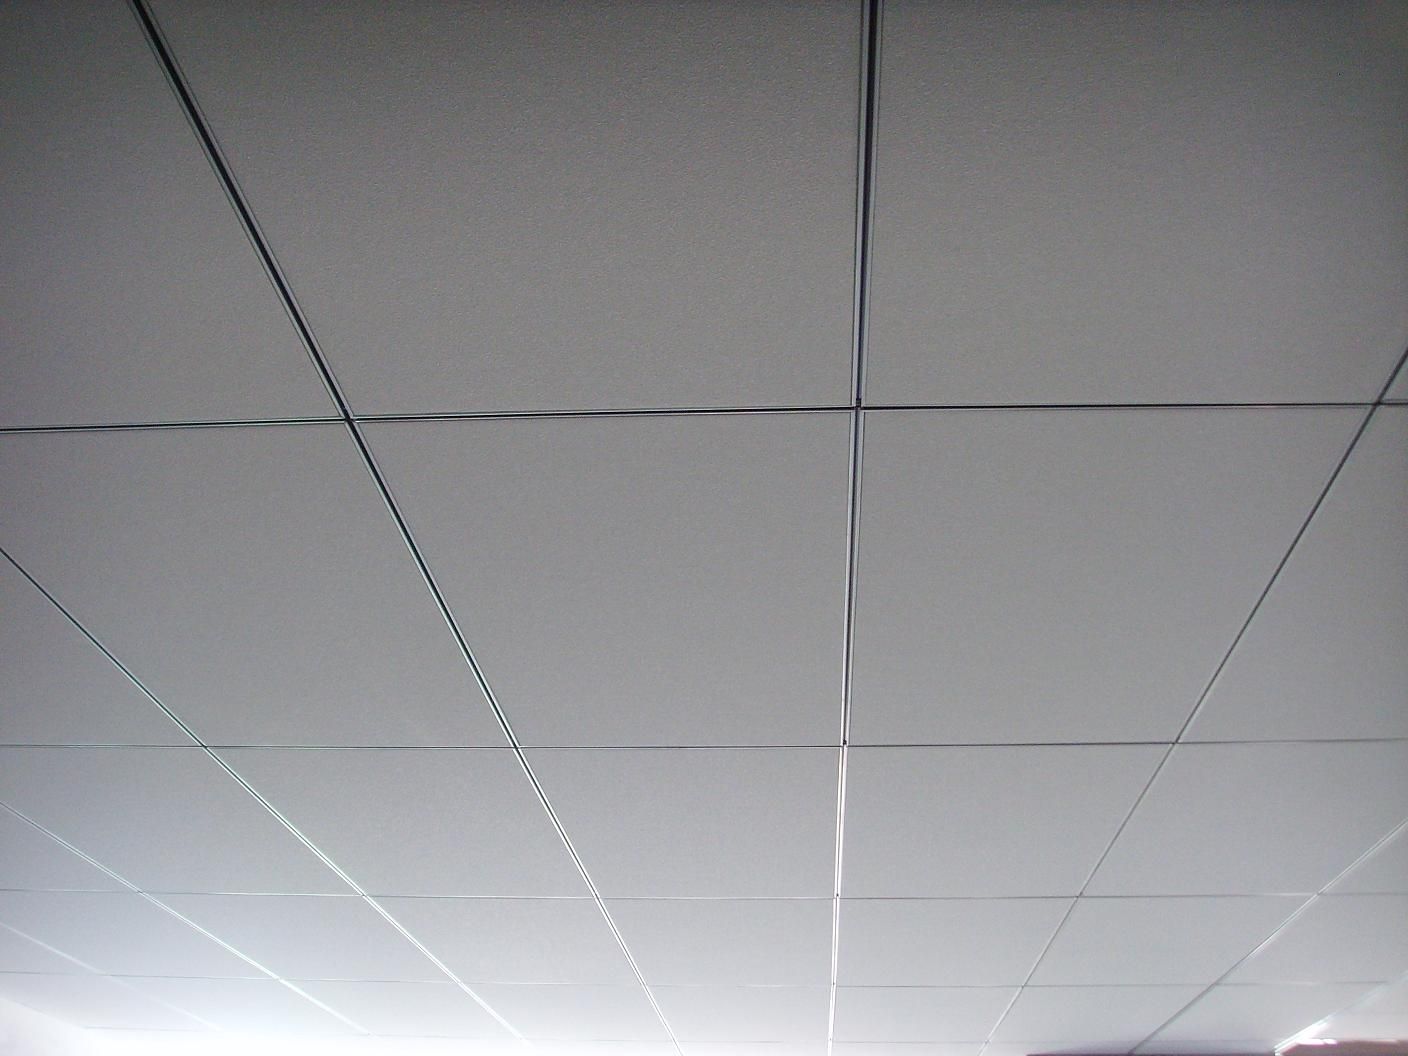 天花板(建築物室內頂部表面的地方)